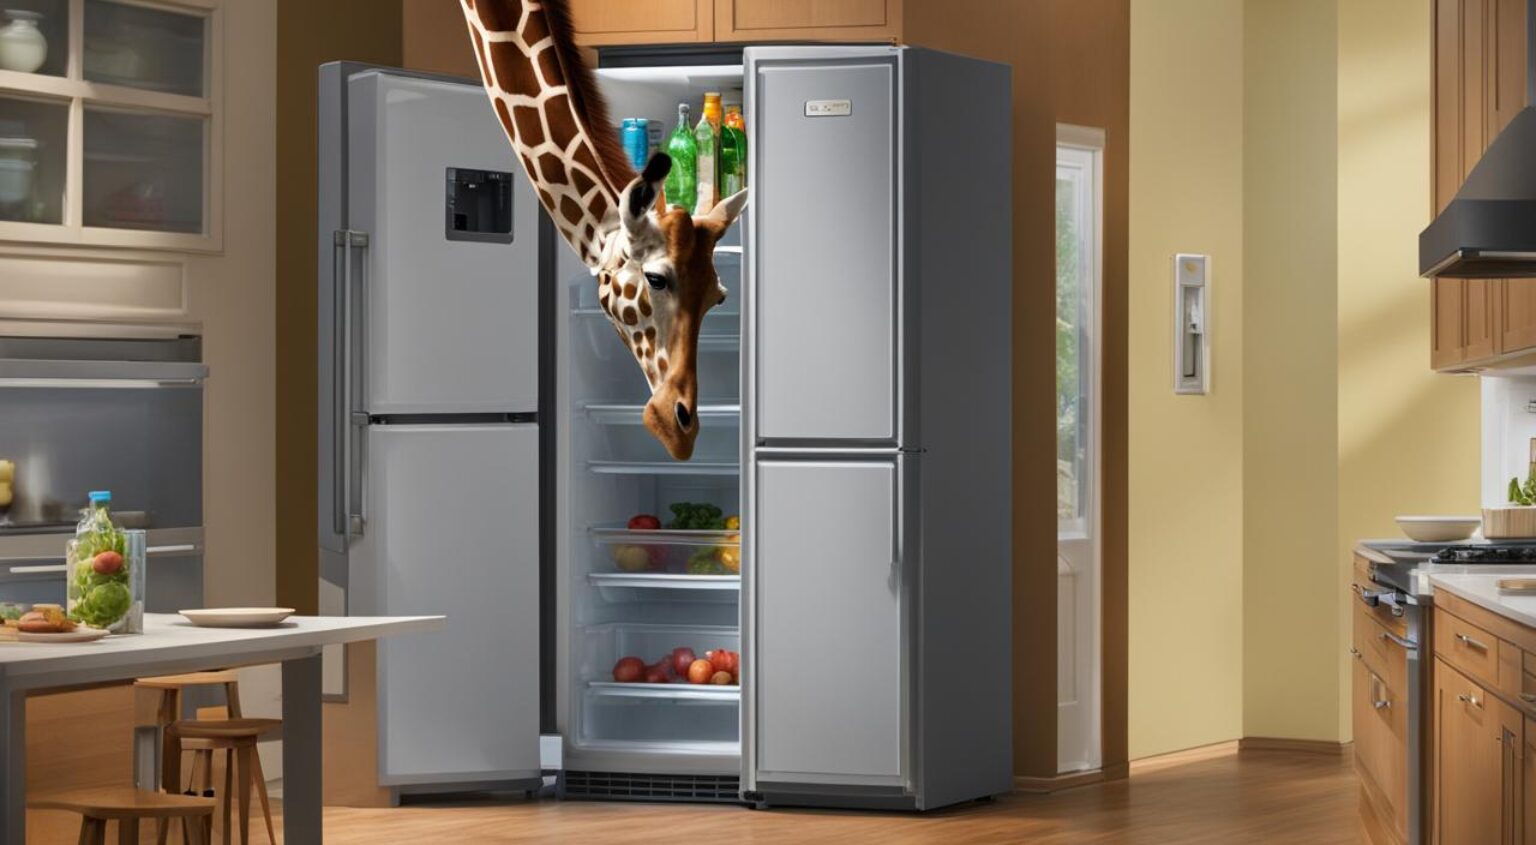 como colocar uma girafa na geladeira